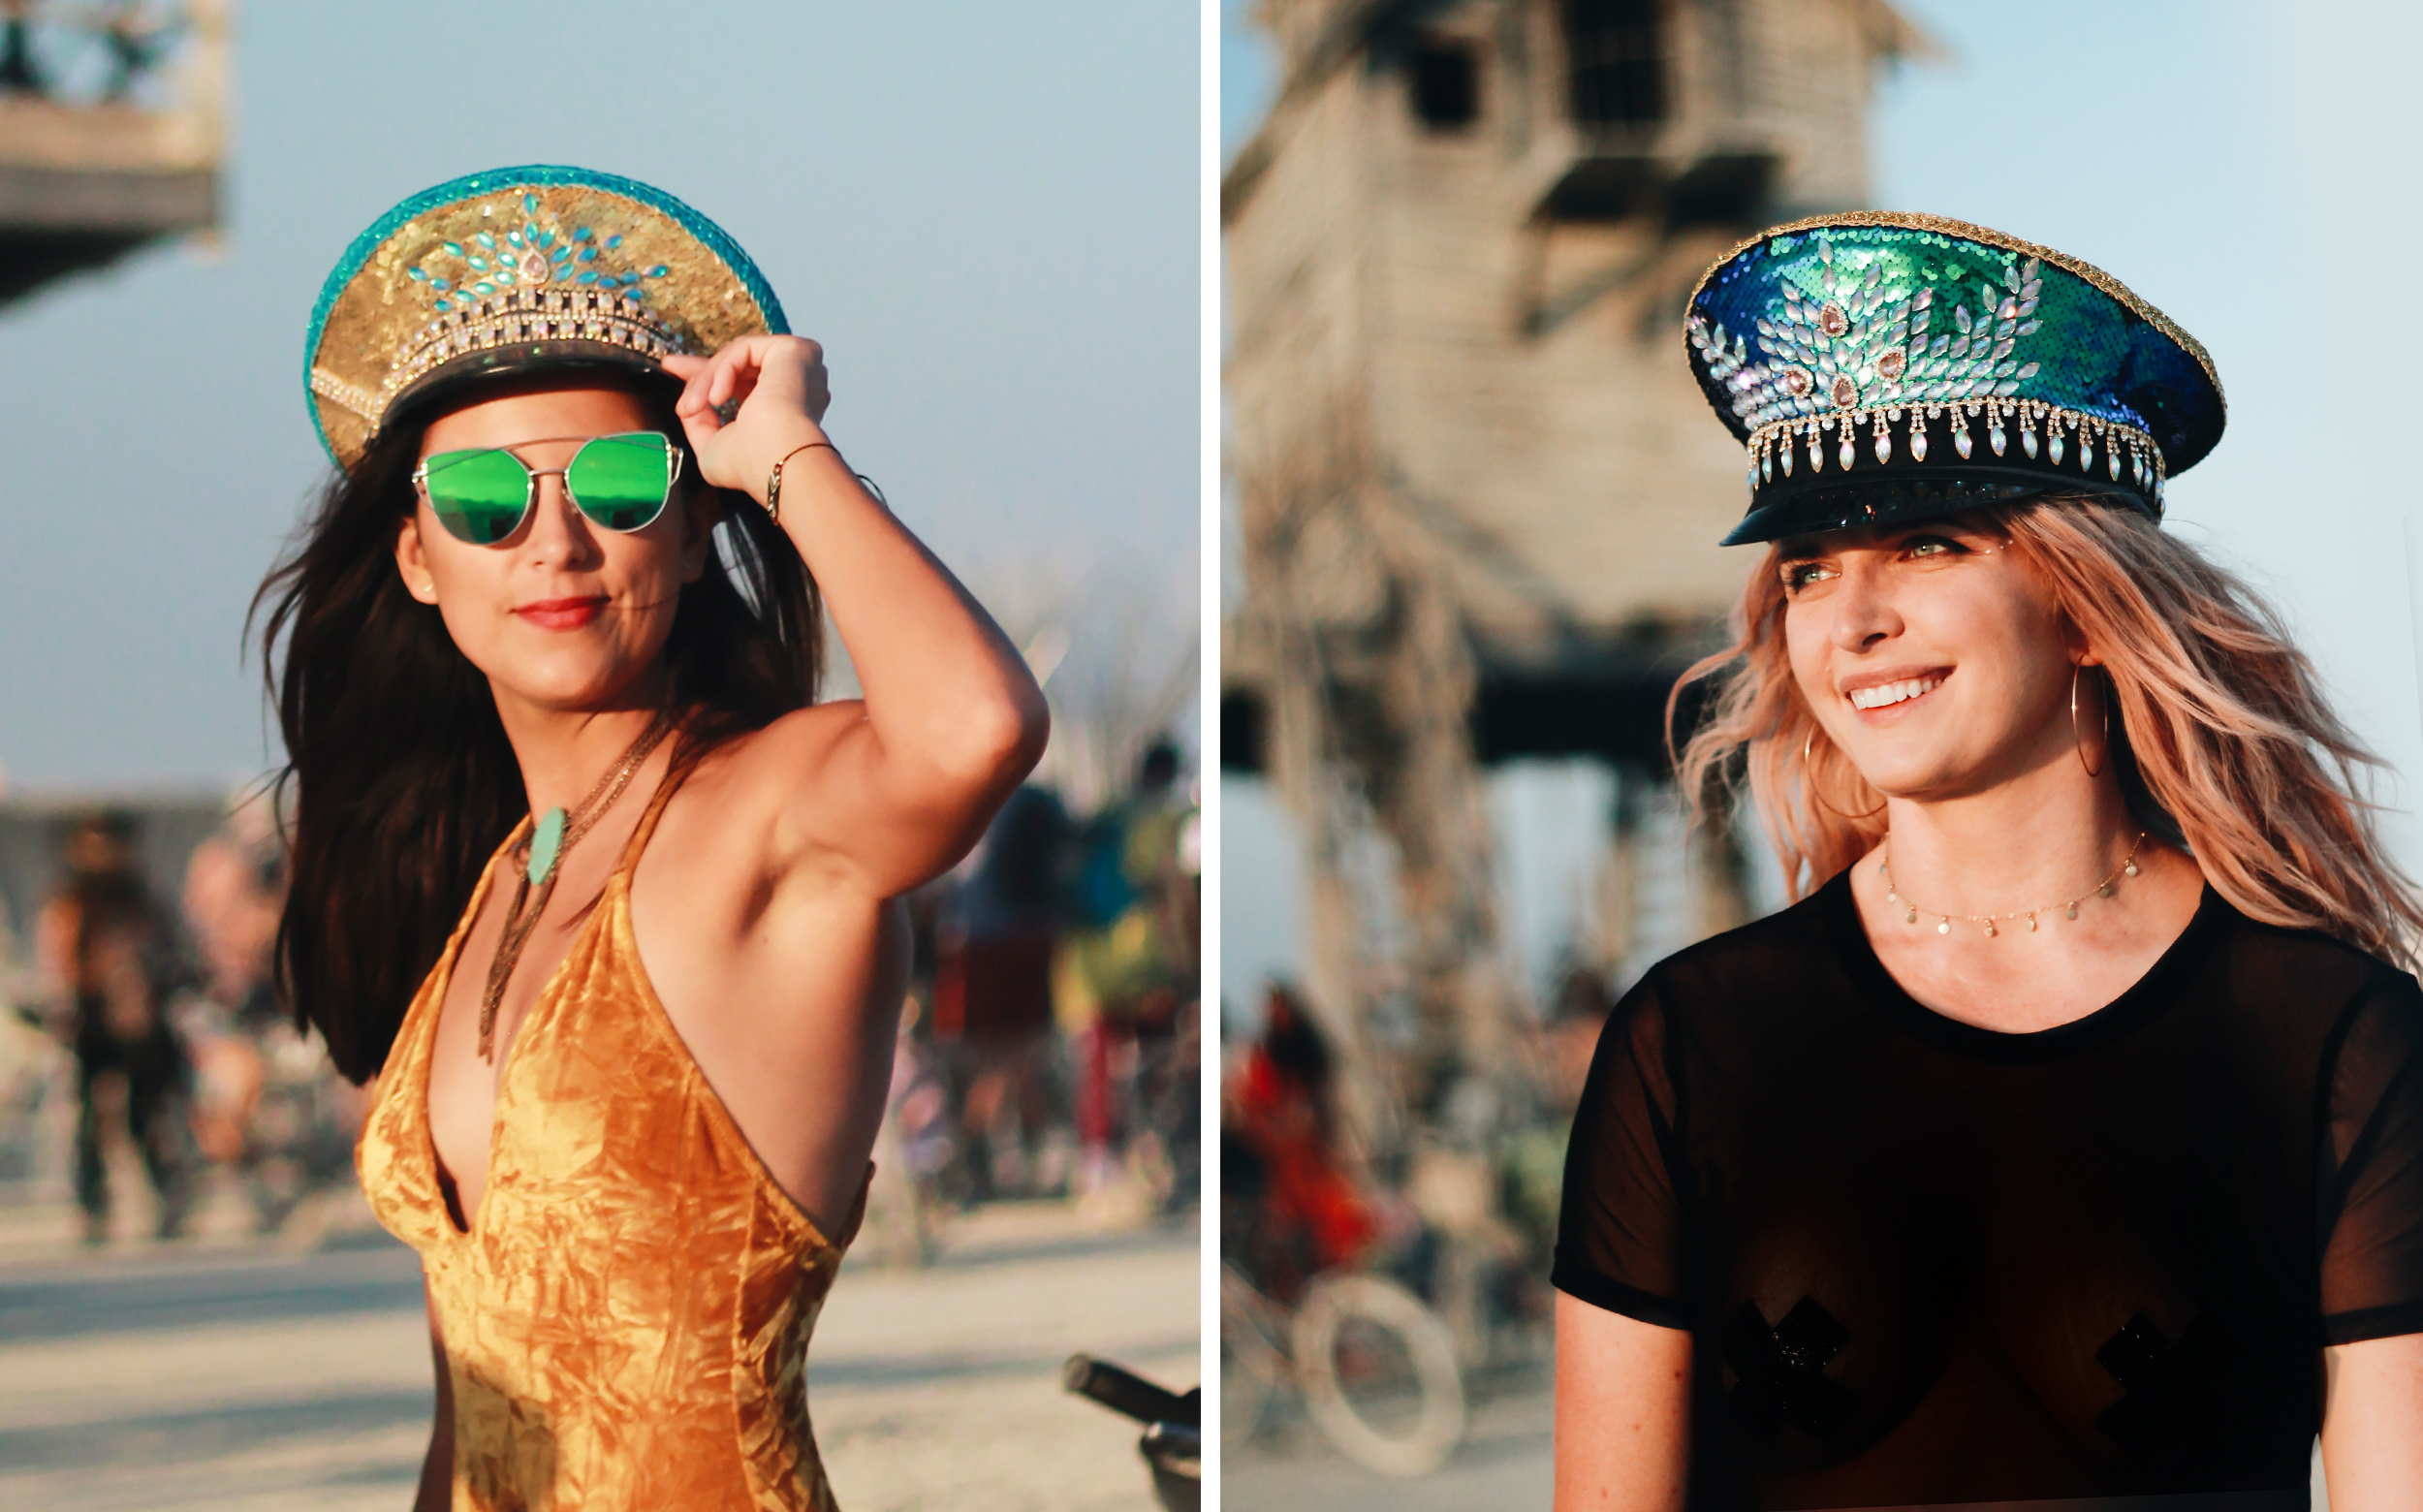 DIY: Make Your Own Amazing Burning Man Hat